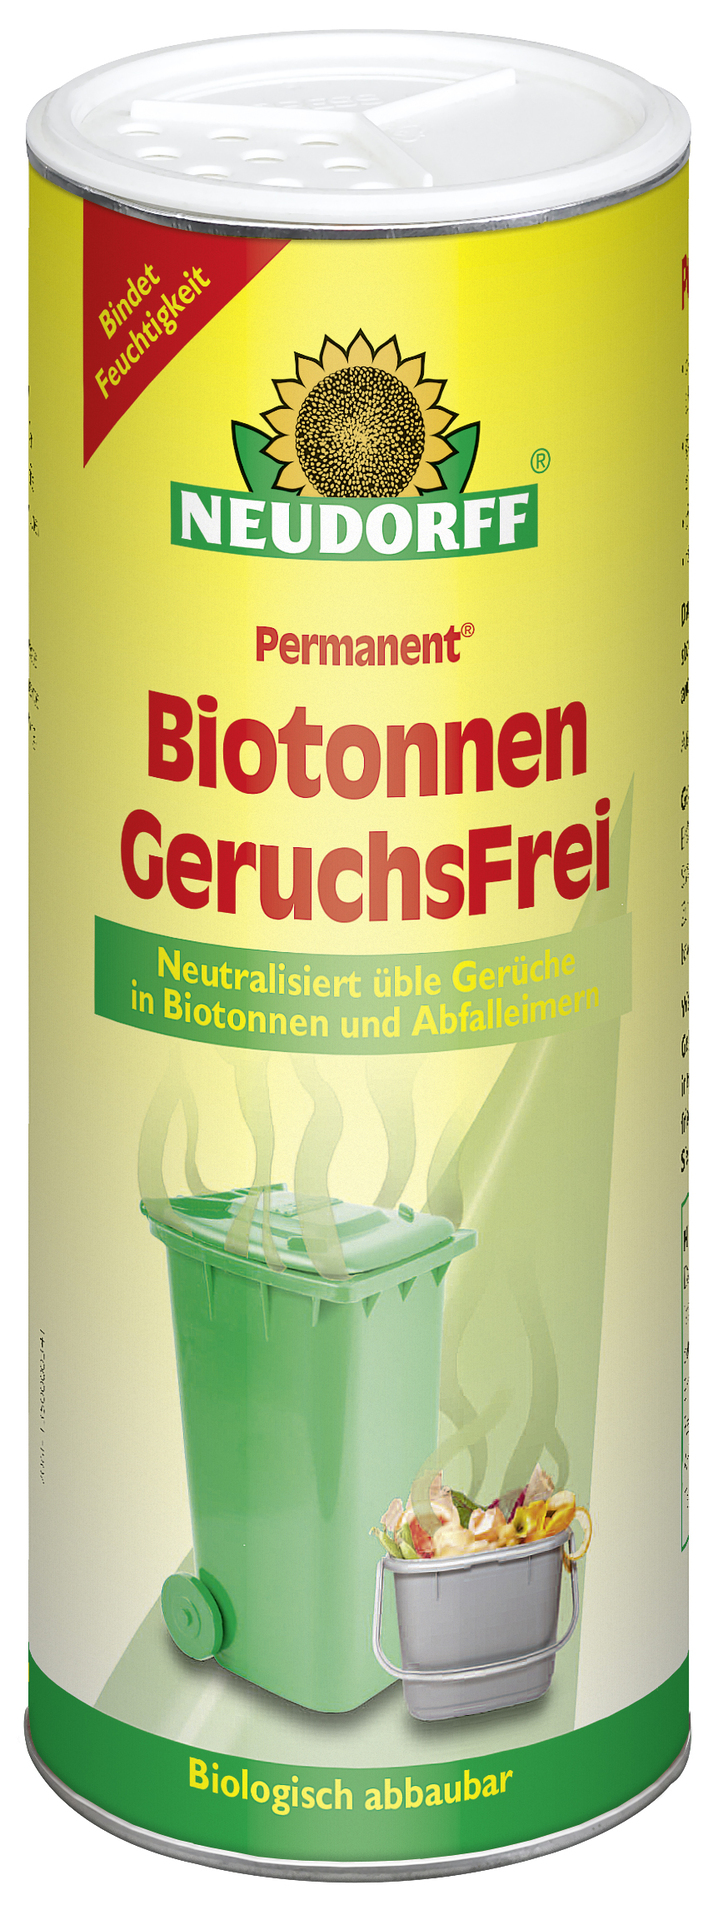 W. Neudorff GmbH KG Permanent  Biotonnen  GeruchsFrei